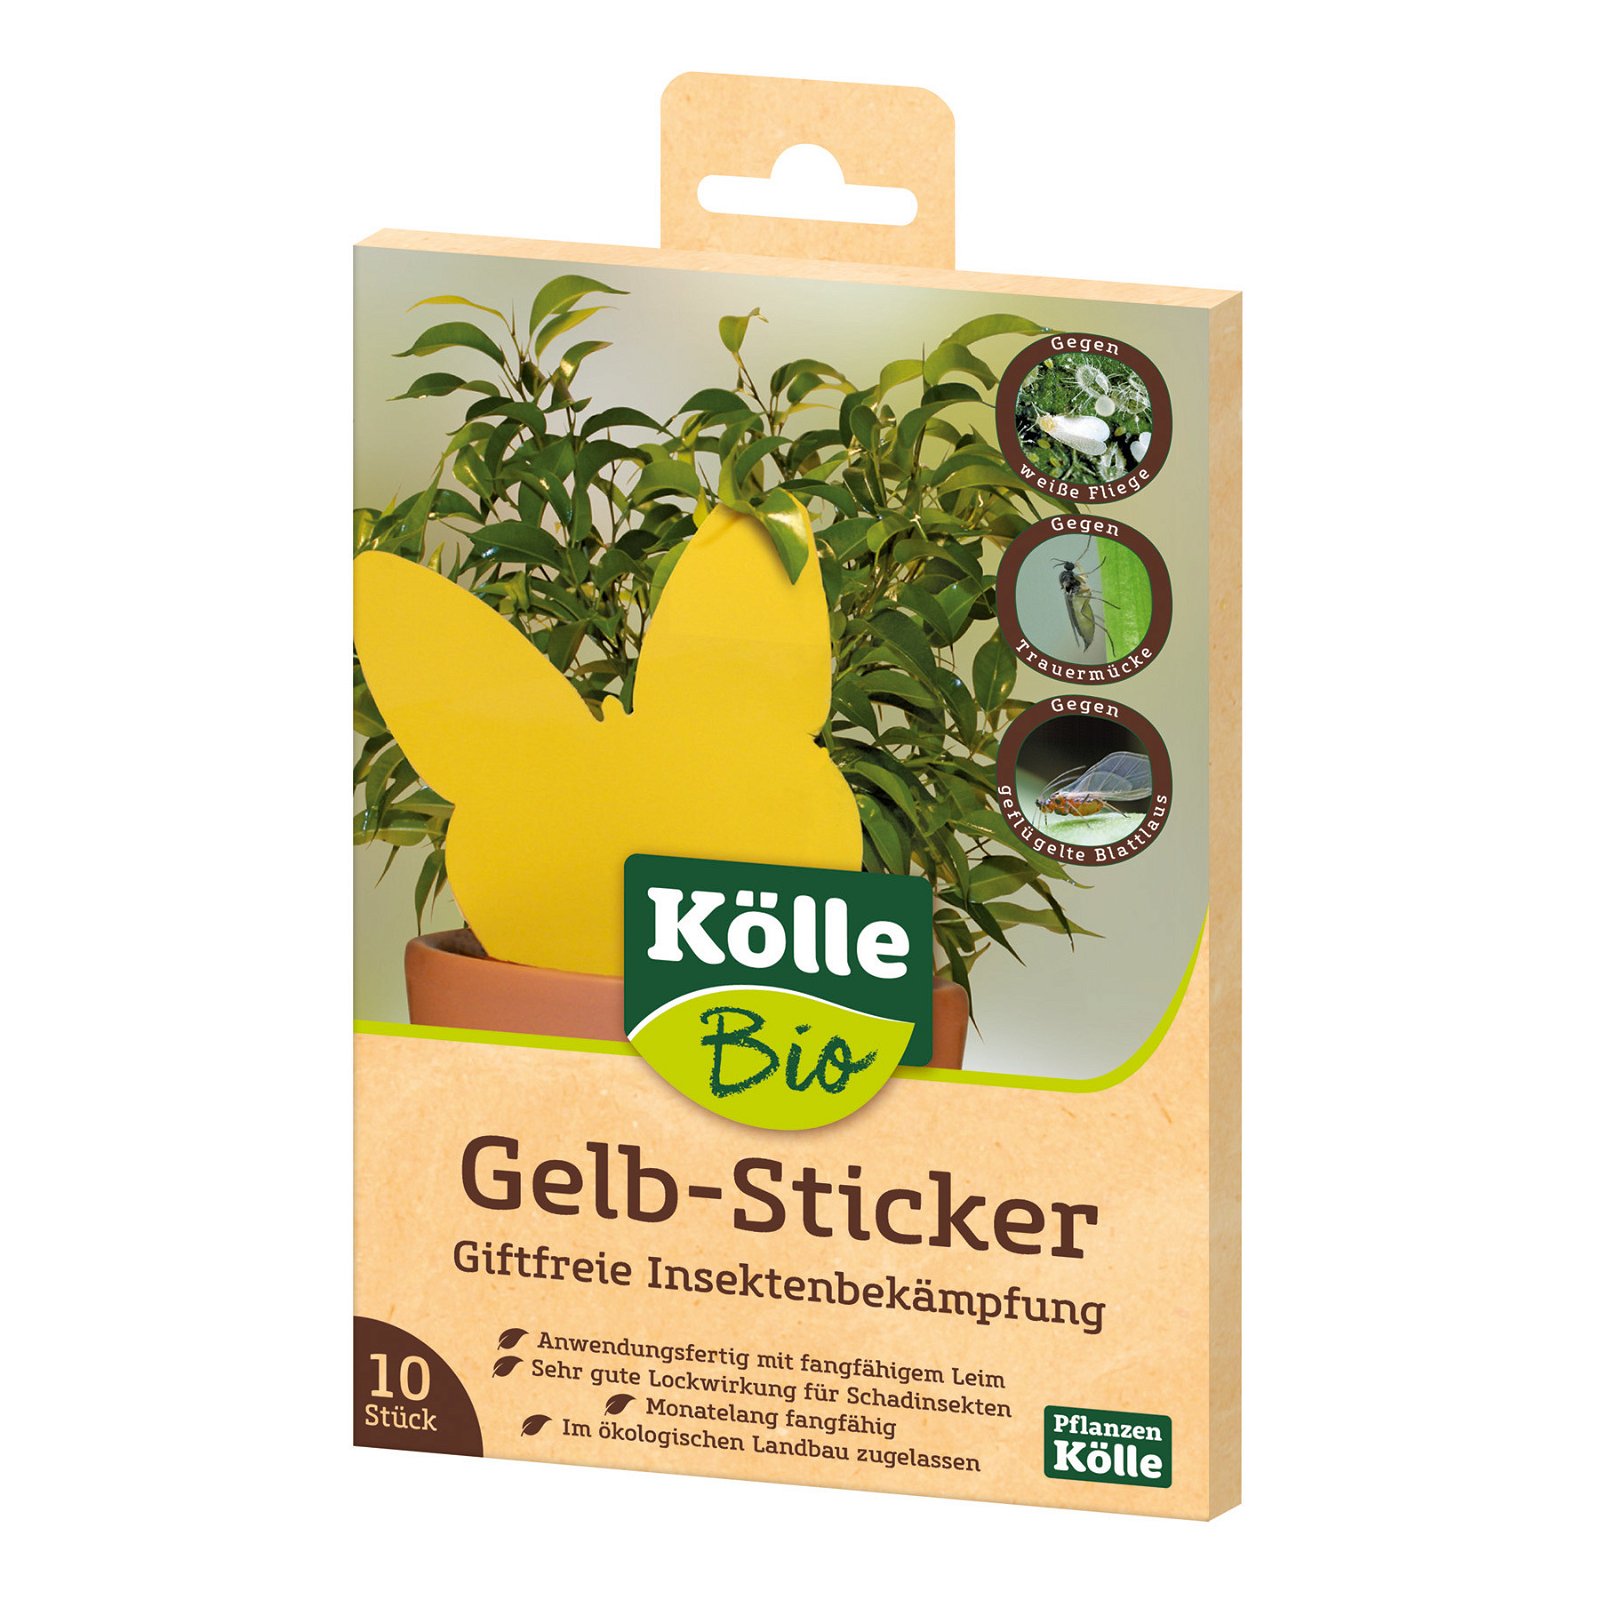 Kölle Bio Gelb-Sticker 10 Stück